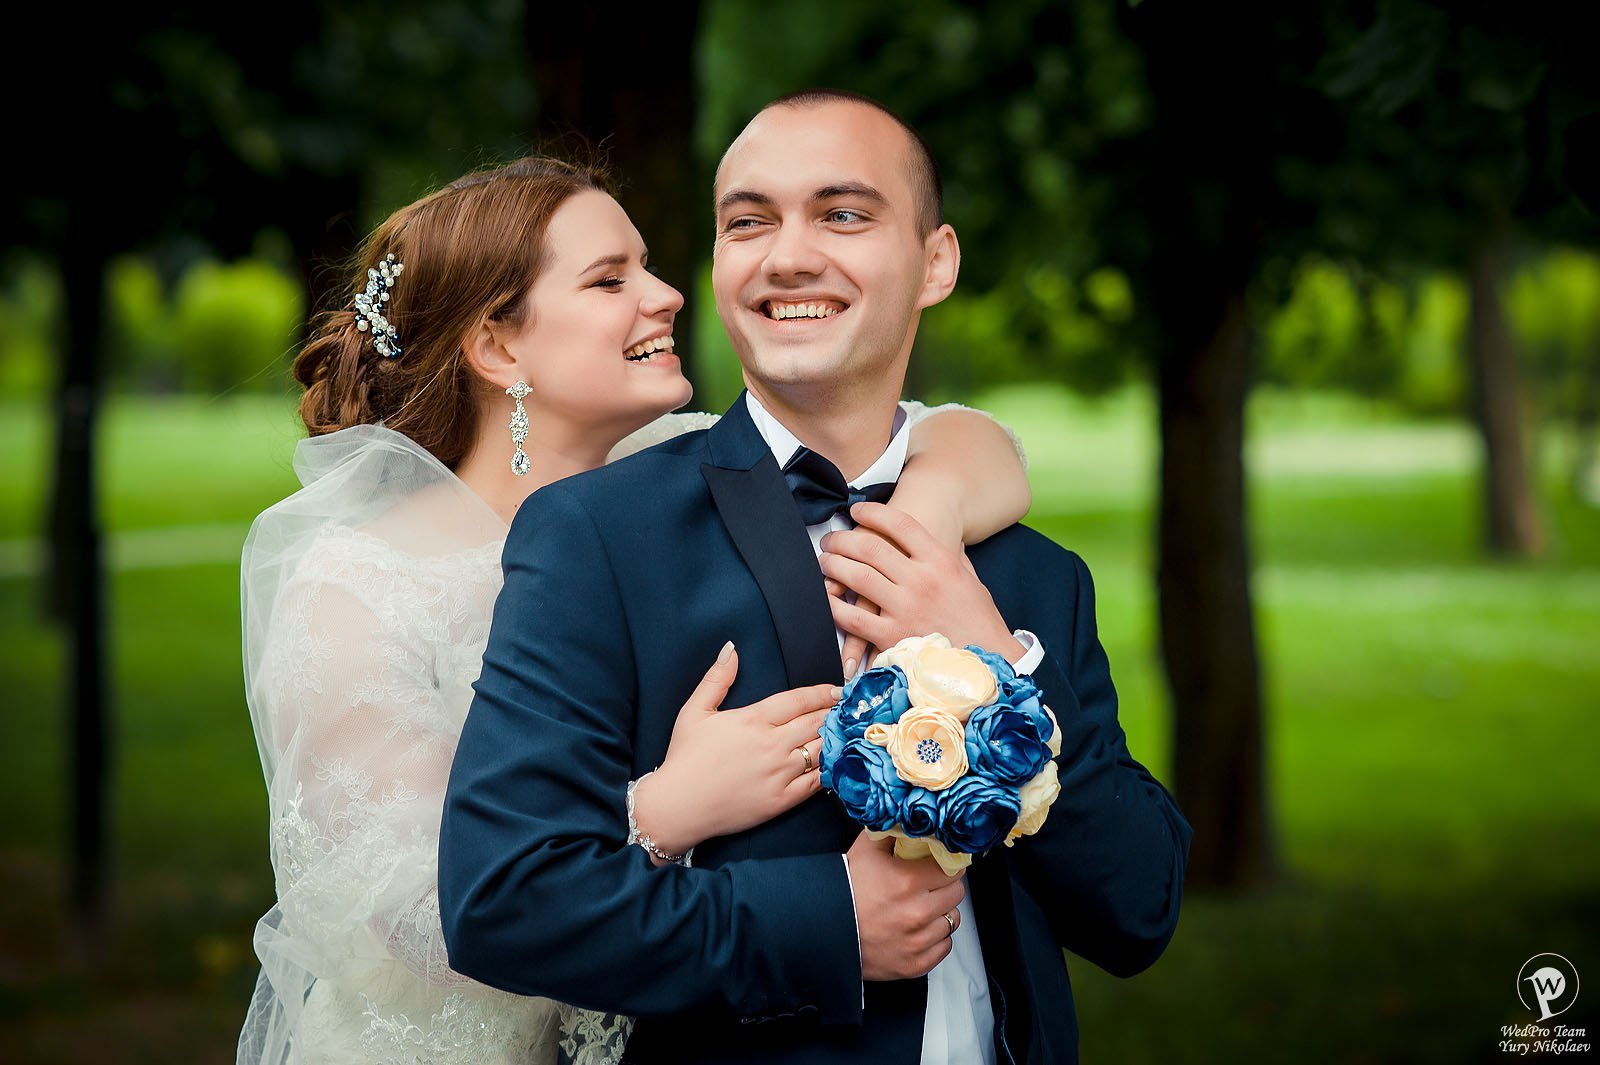 Юрий Николаев - фотограф Love Story, свадебный фотограф, семейный фотограф в городе Могилев, фотография от 18.05.2018